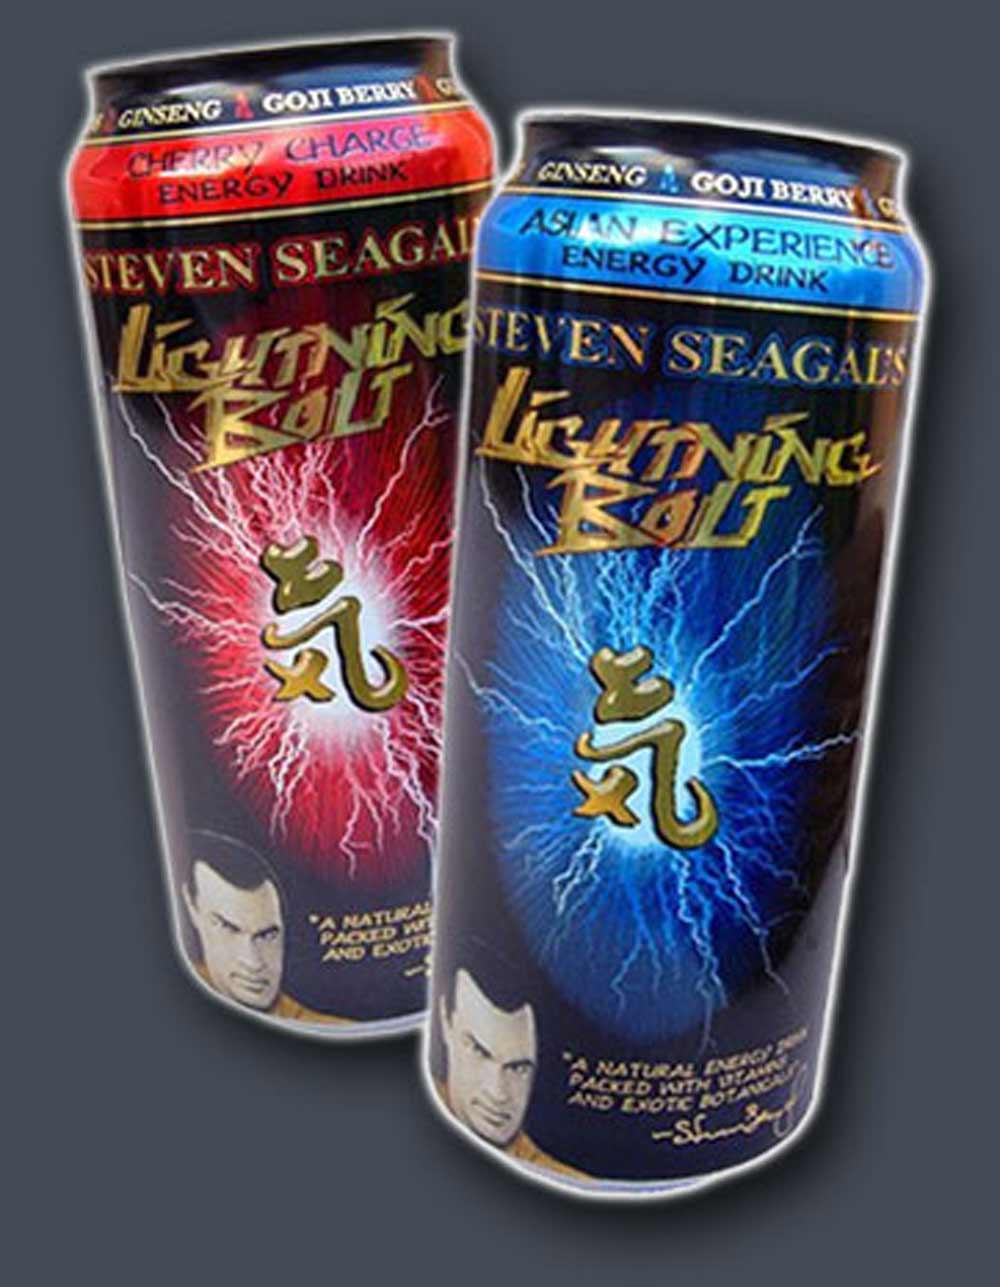 Steven Seagal’s Lightning Bolt Energy Drink (JoKing’s Mojo Slurp Energy Drink) Review